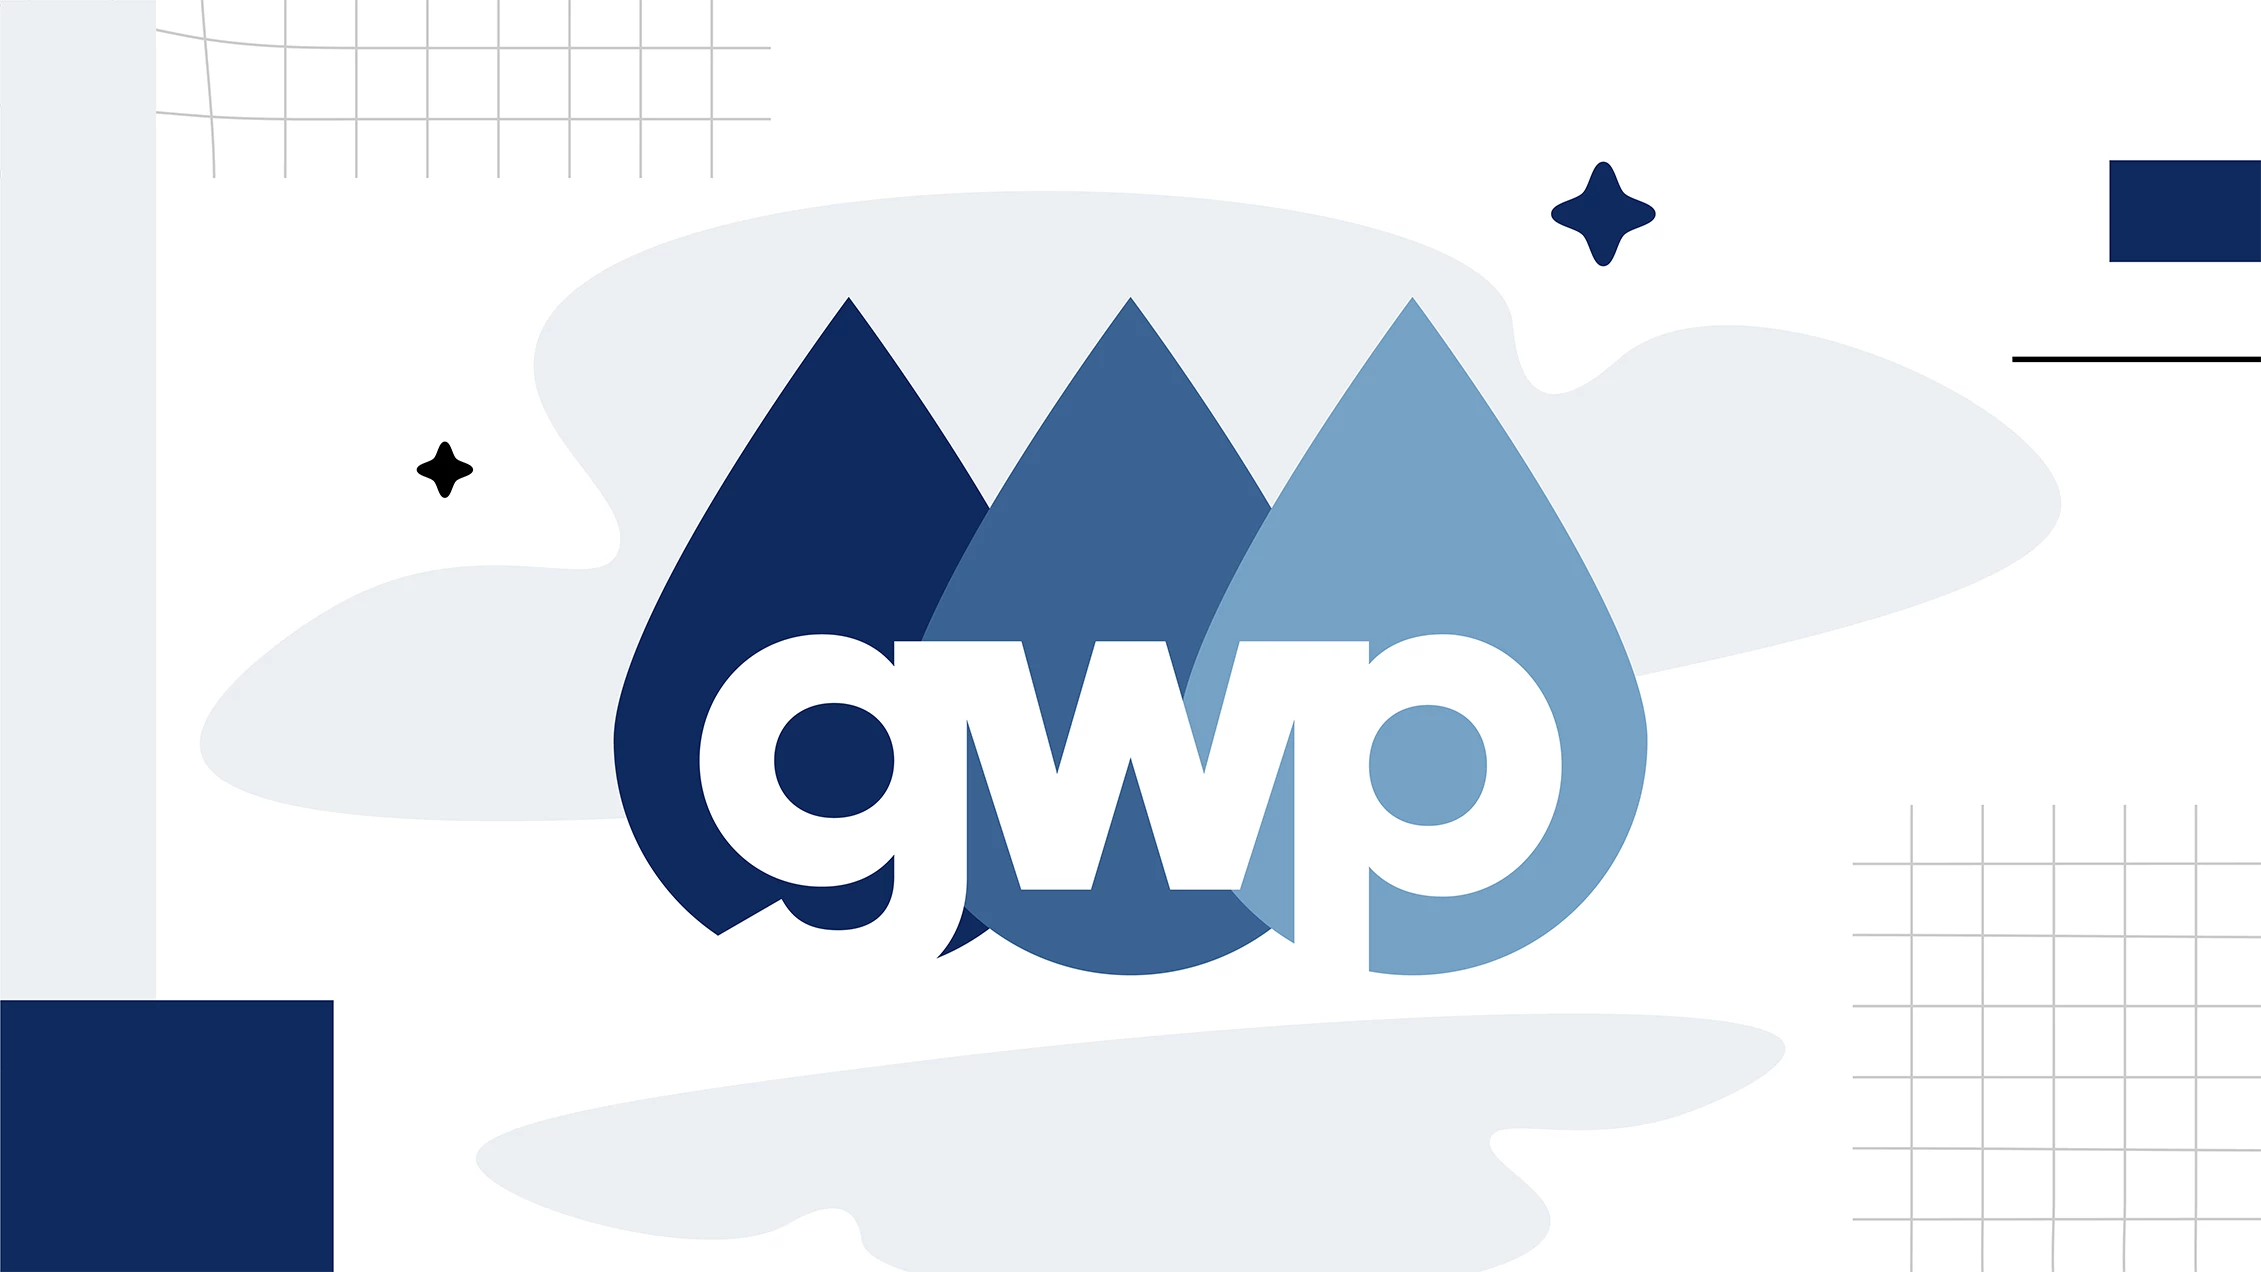 Project: GWP-ის თანამშრომლების გადამზადება